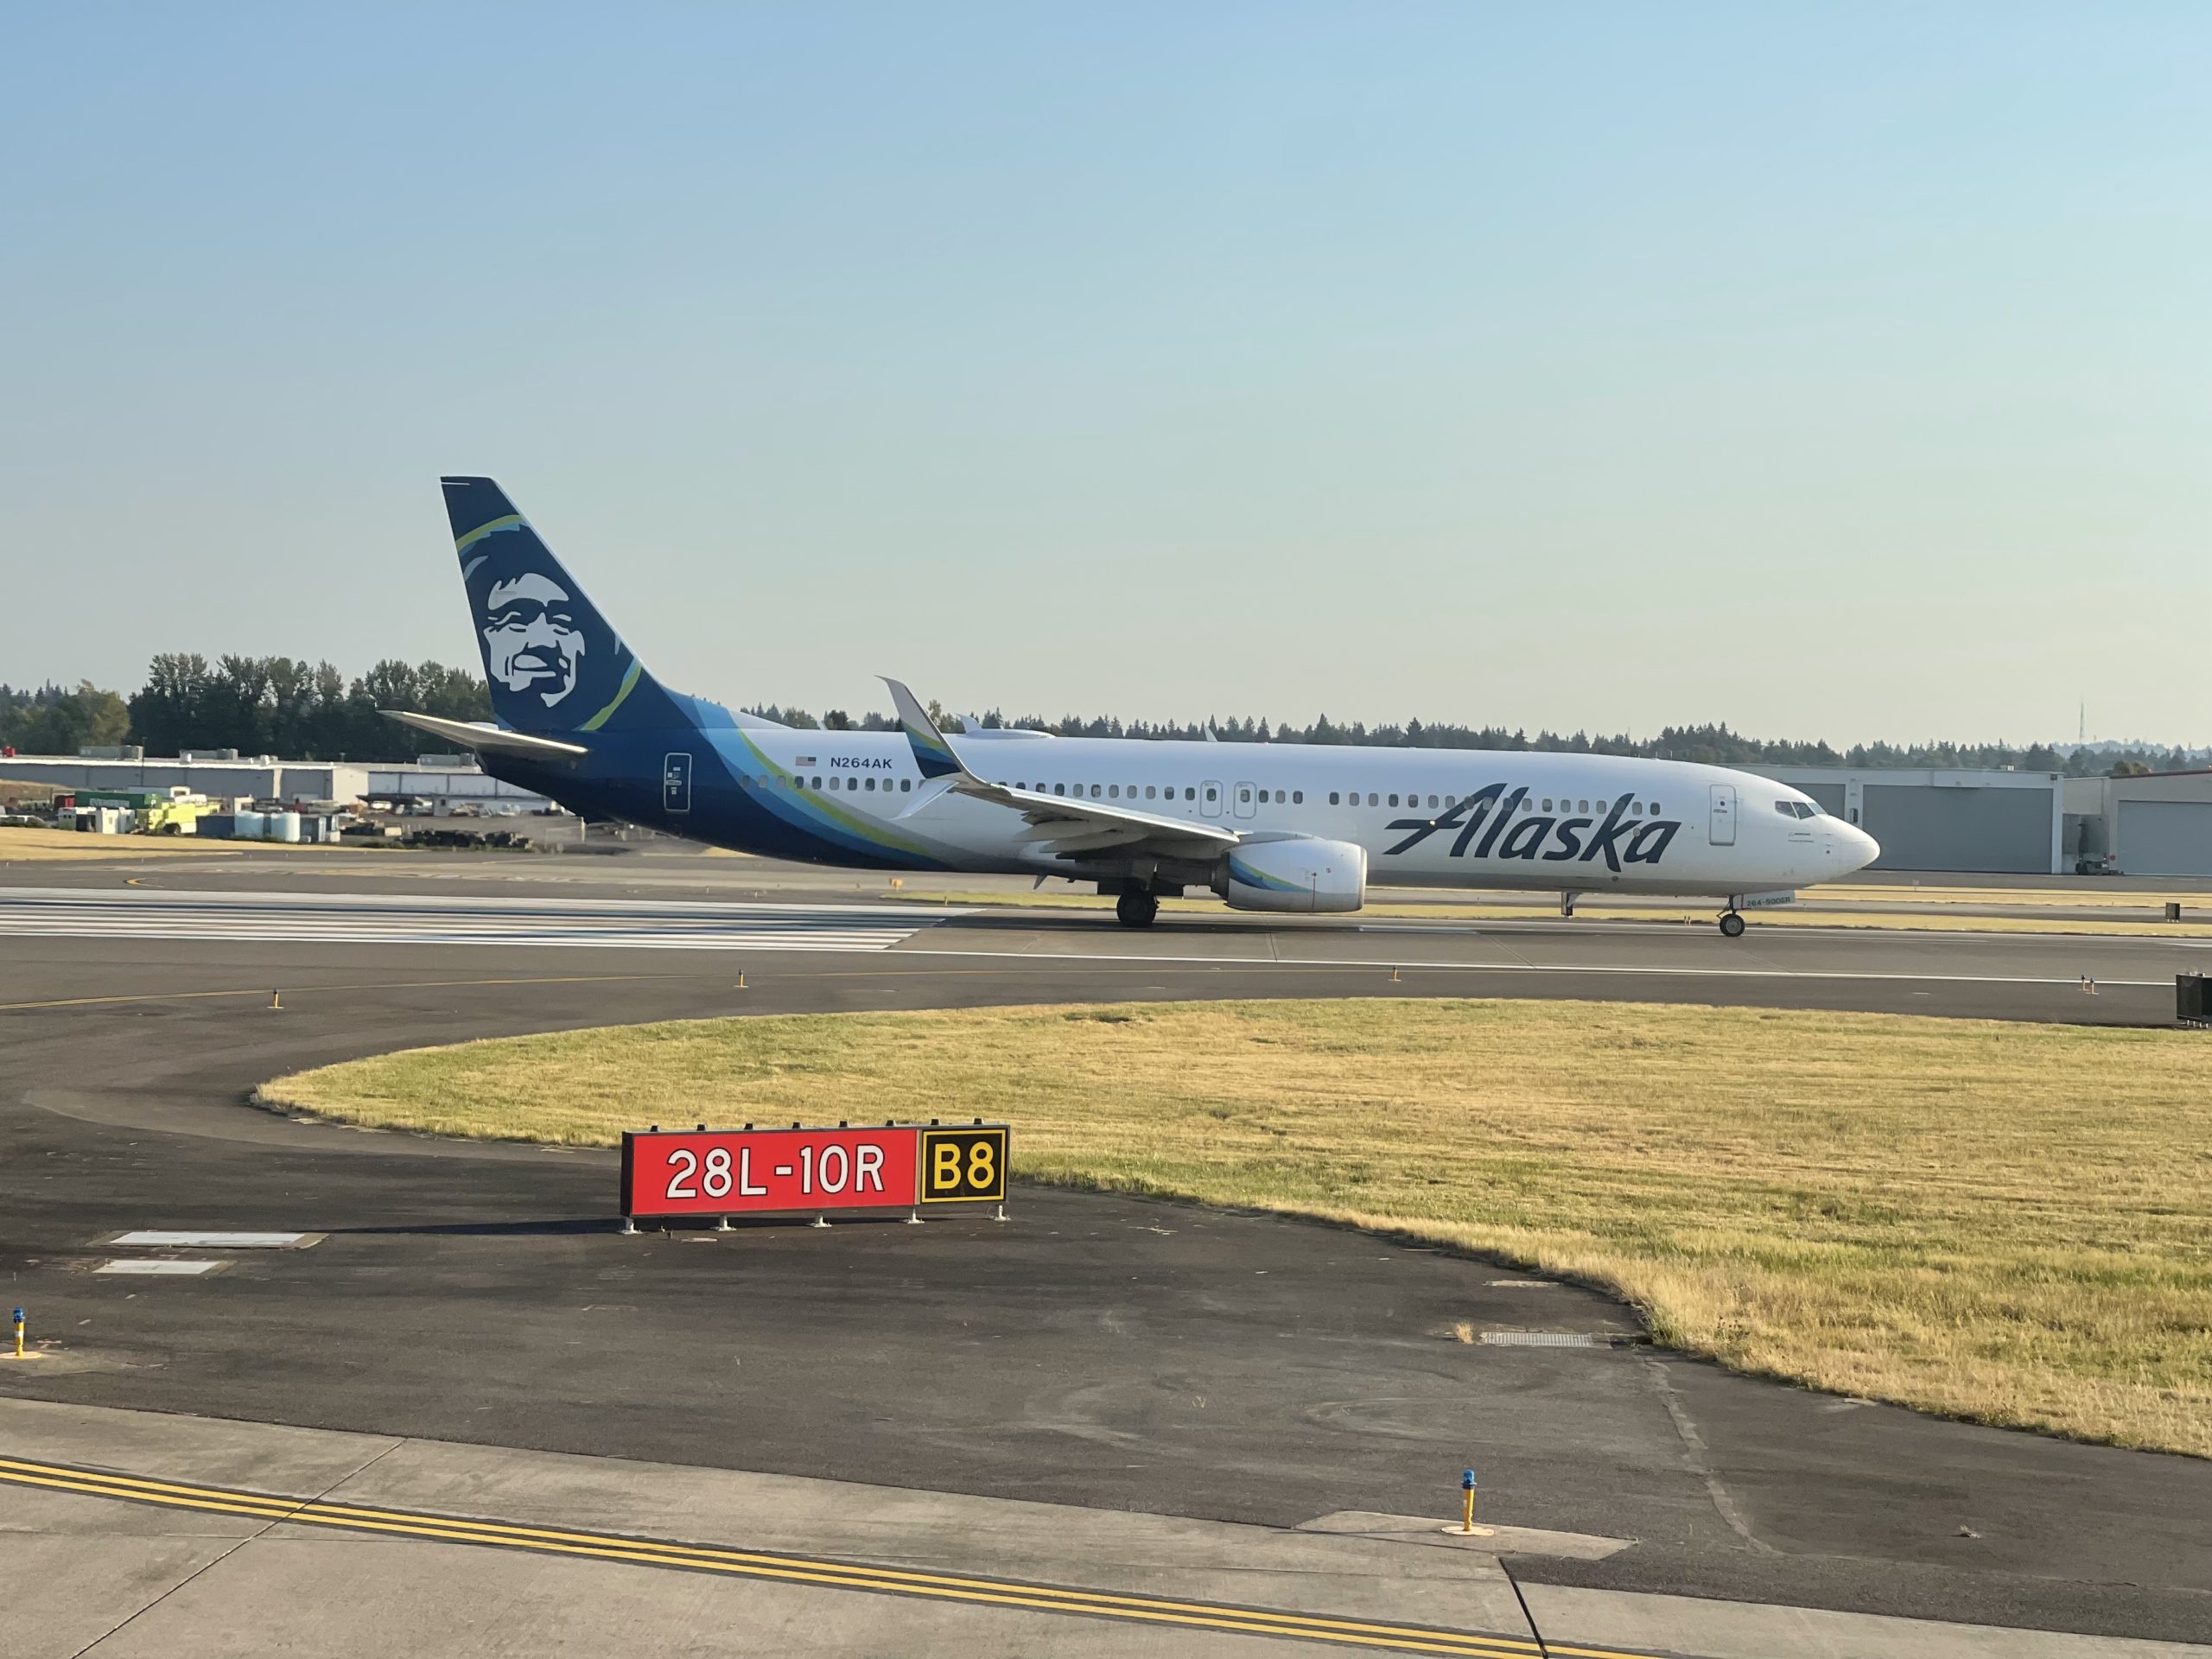 Alaska's 737 First Class